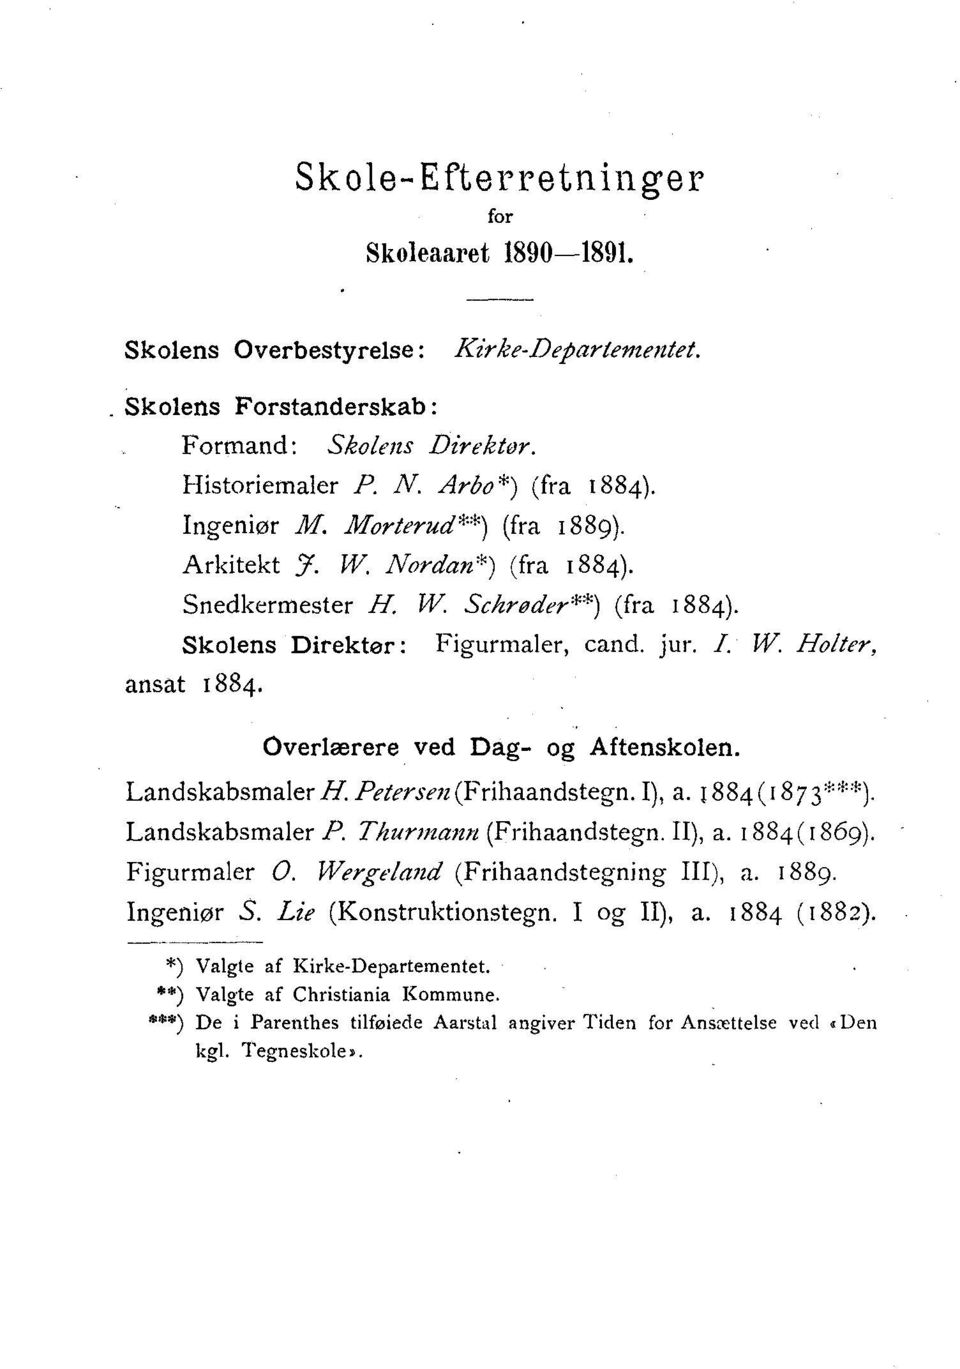 Overlærere ved Dag - og Aftenskolen. LandskabsmalerH. Petersen (Frihaandstegn. I), a. 1884 (1873"). Landskabsmaler P. Thurmann (Frihaandstegn. II), a. 1884 (1869). Figurmaler 0.